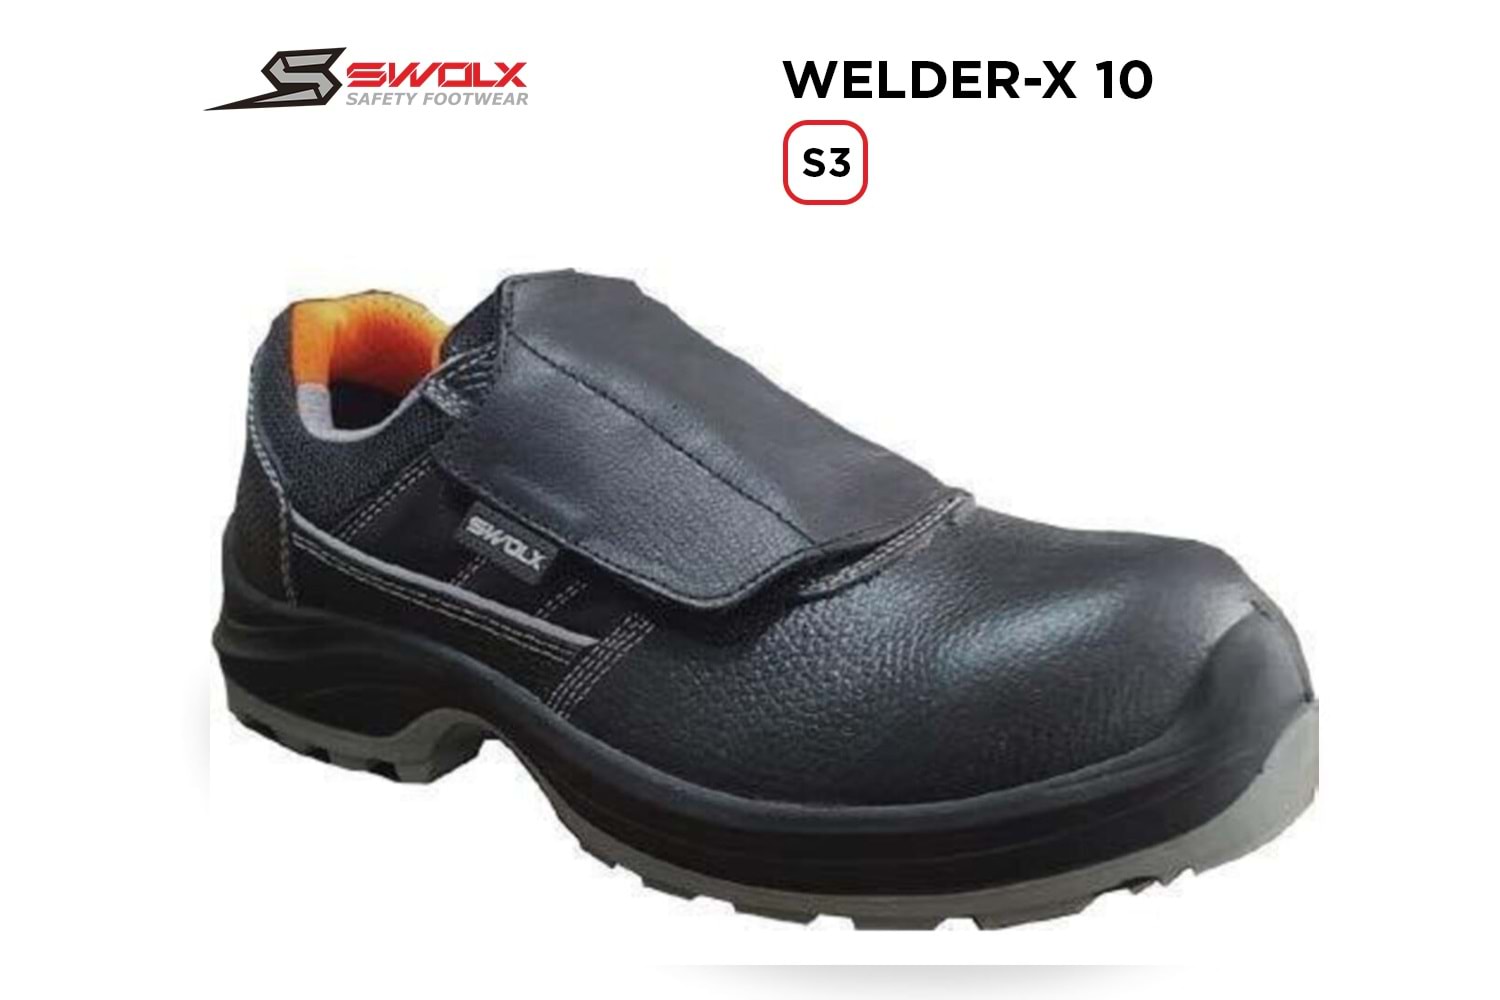 Swolx İş Ayakkabısı - Welder-X 10 S3 (Clas-x 10 K S3) Kaynakçı - 39